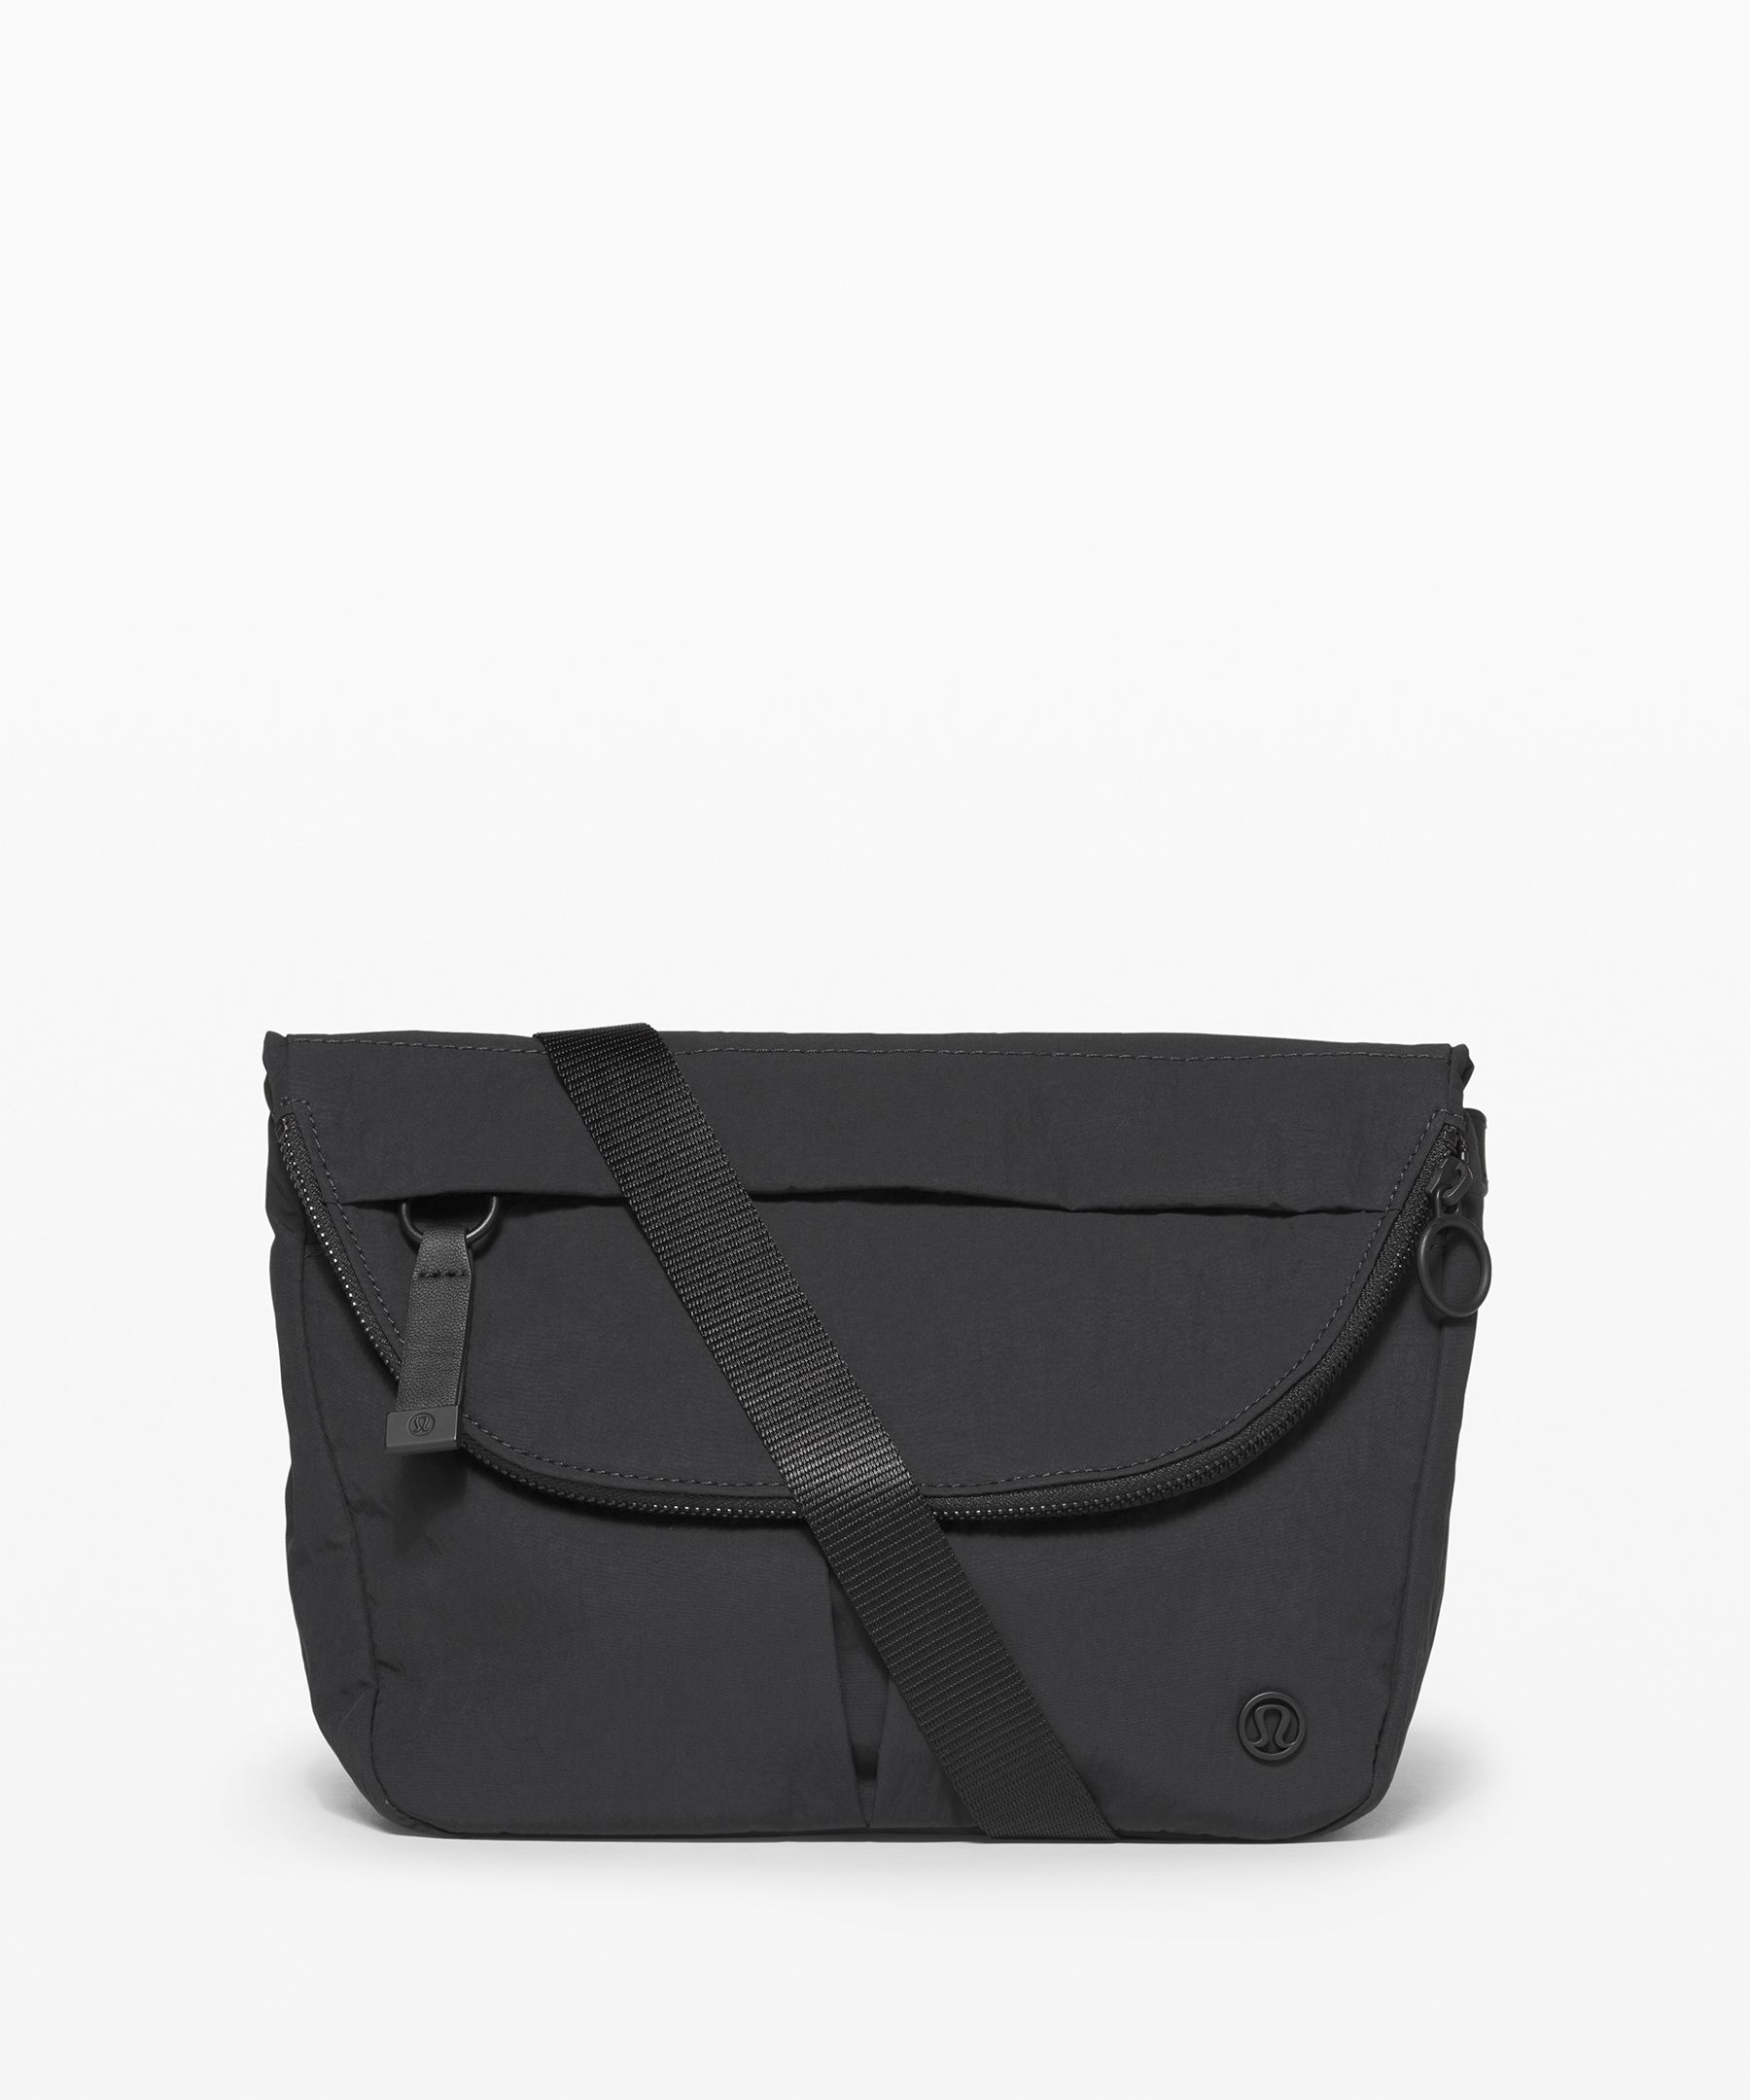 lululemon black purse